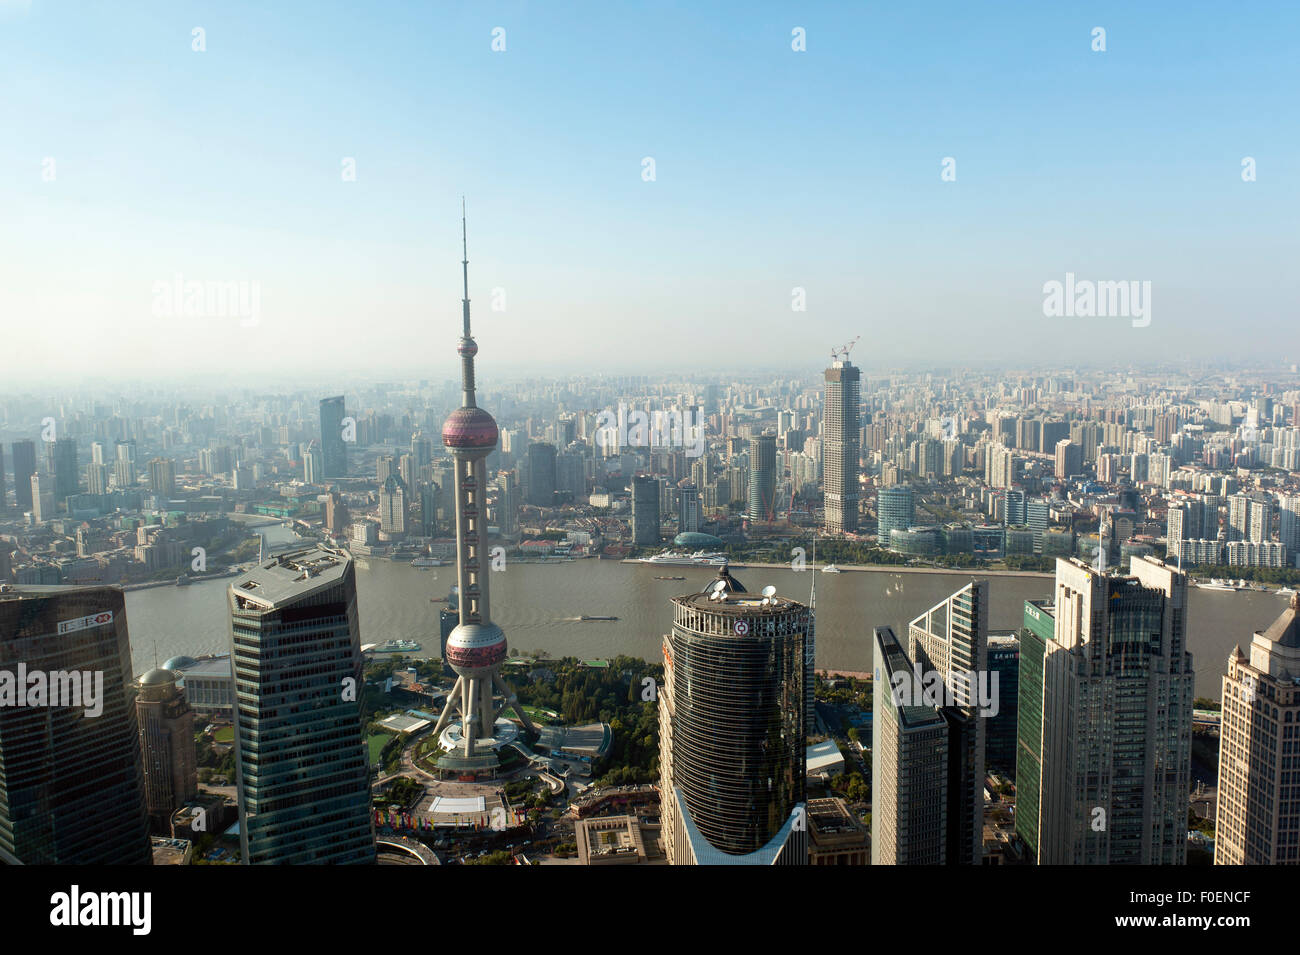 Vue depuis la tour Jin Mao avec gratte-ciel Oriental Pearl TV Tower, la rivière Huangpu, Pudtog, Shanghai, Chine Banque D'Images